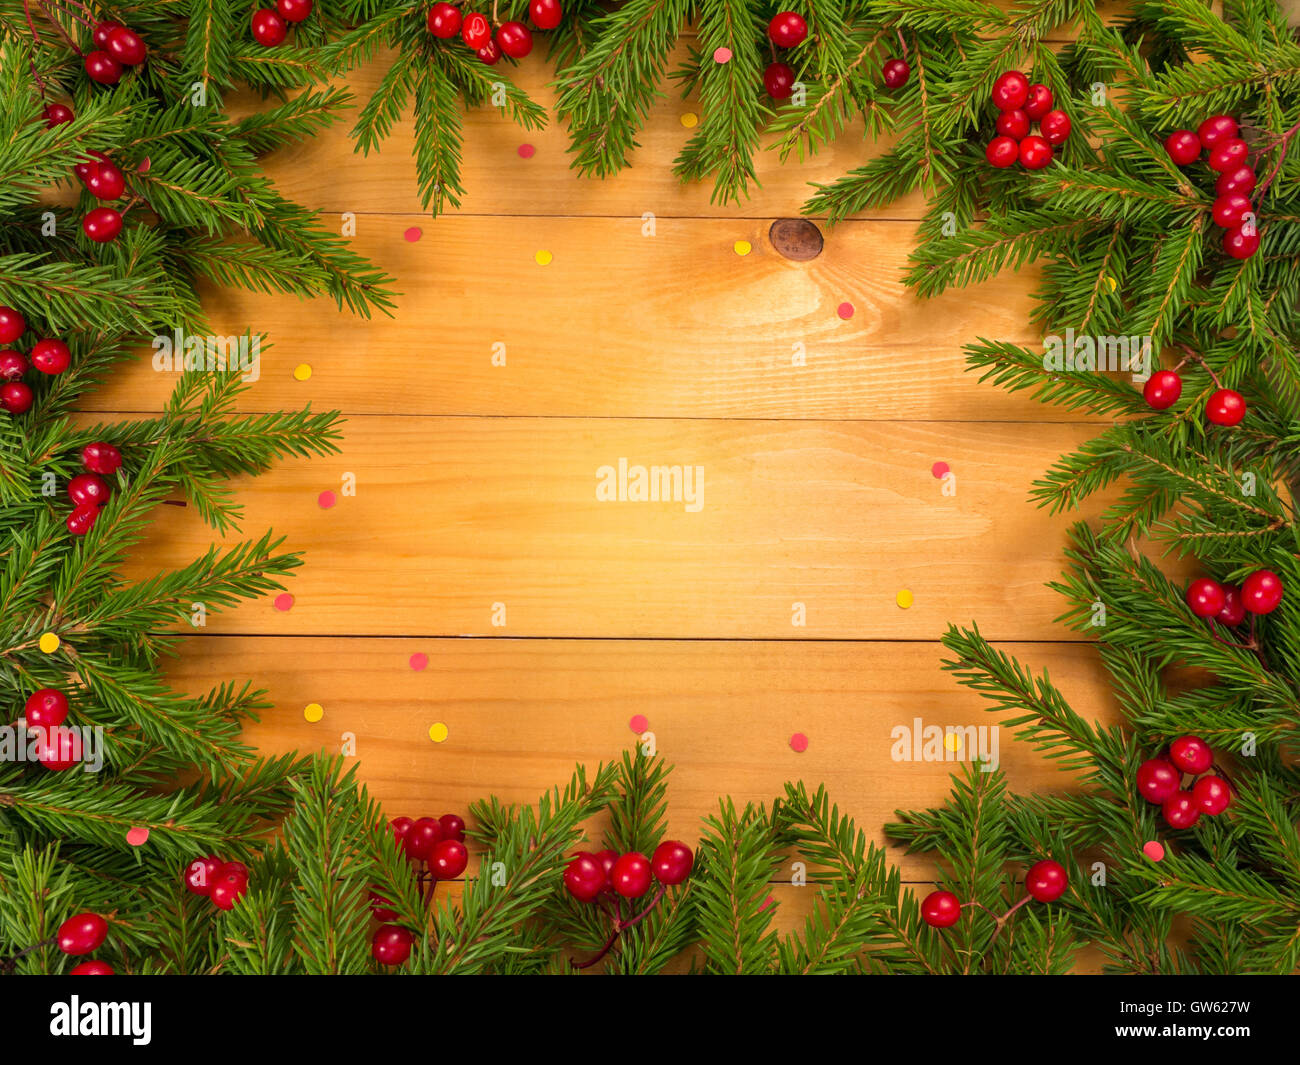 Weihnachtsbaum und rote Beeren-Frame auf den Holzplanken Hintergrund mit roten und gelben Konfetti bestreut Stockfoto